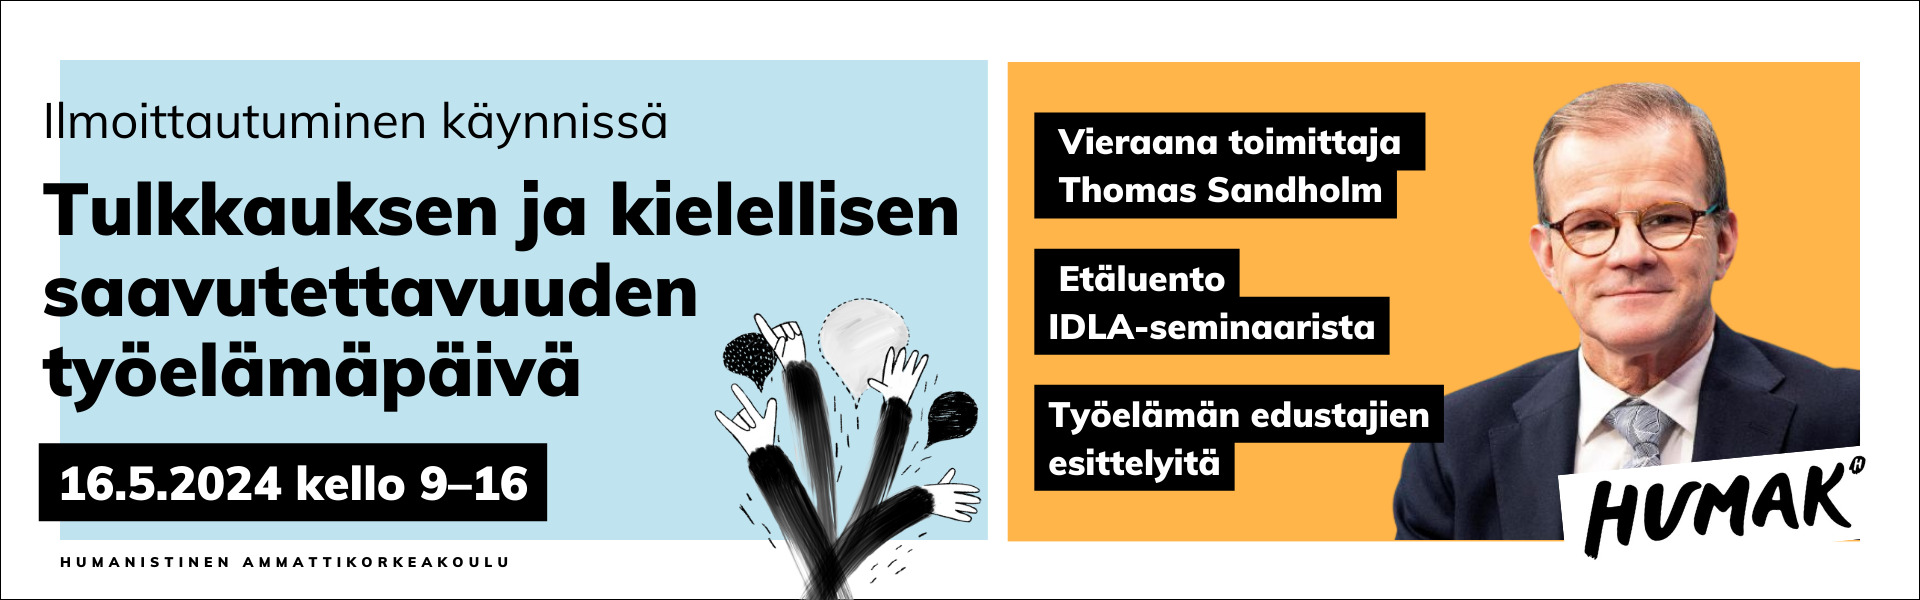 Save the date. Tulkkauksen ja kielellisen saavutettavuuden työlämäpäivä. 16.5.2024. Vieraana Thomas Sandholm, etäluento IDLA-seminaarista ja työelämänedustajien esittelyitä. Humak-logo.